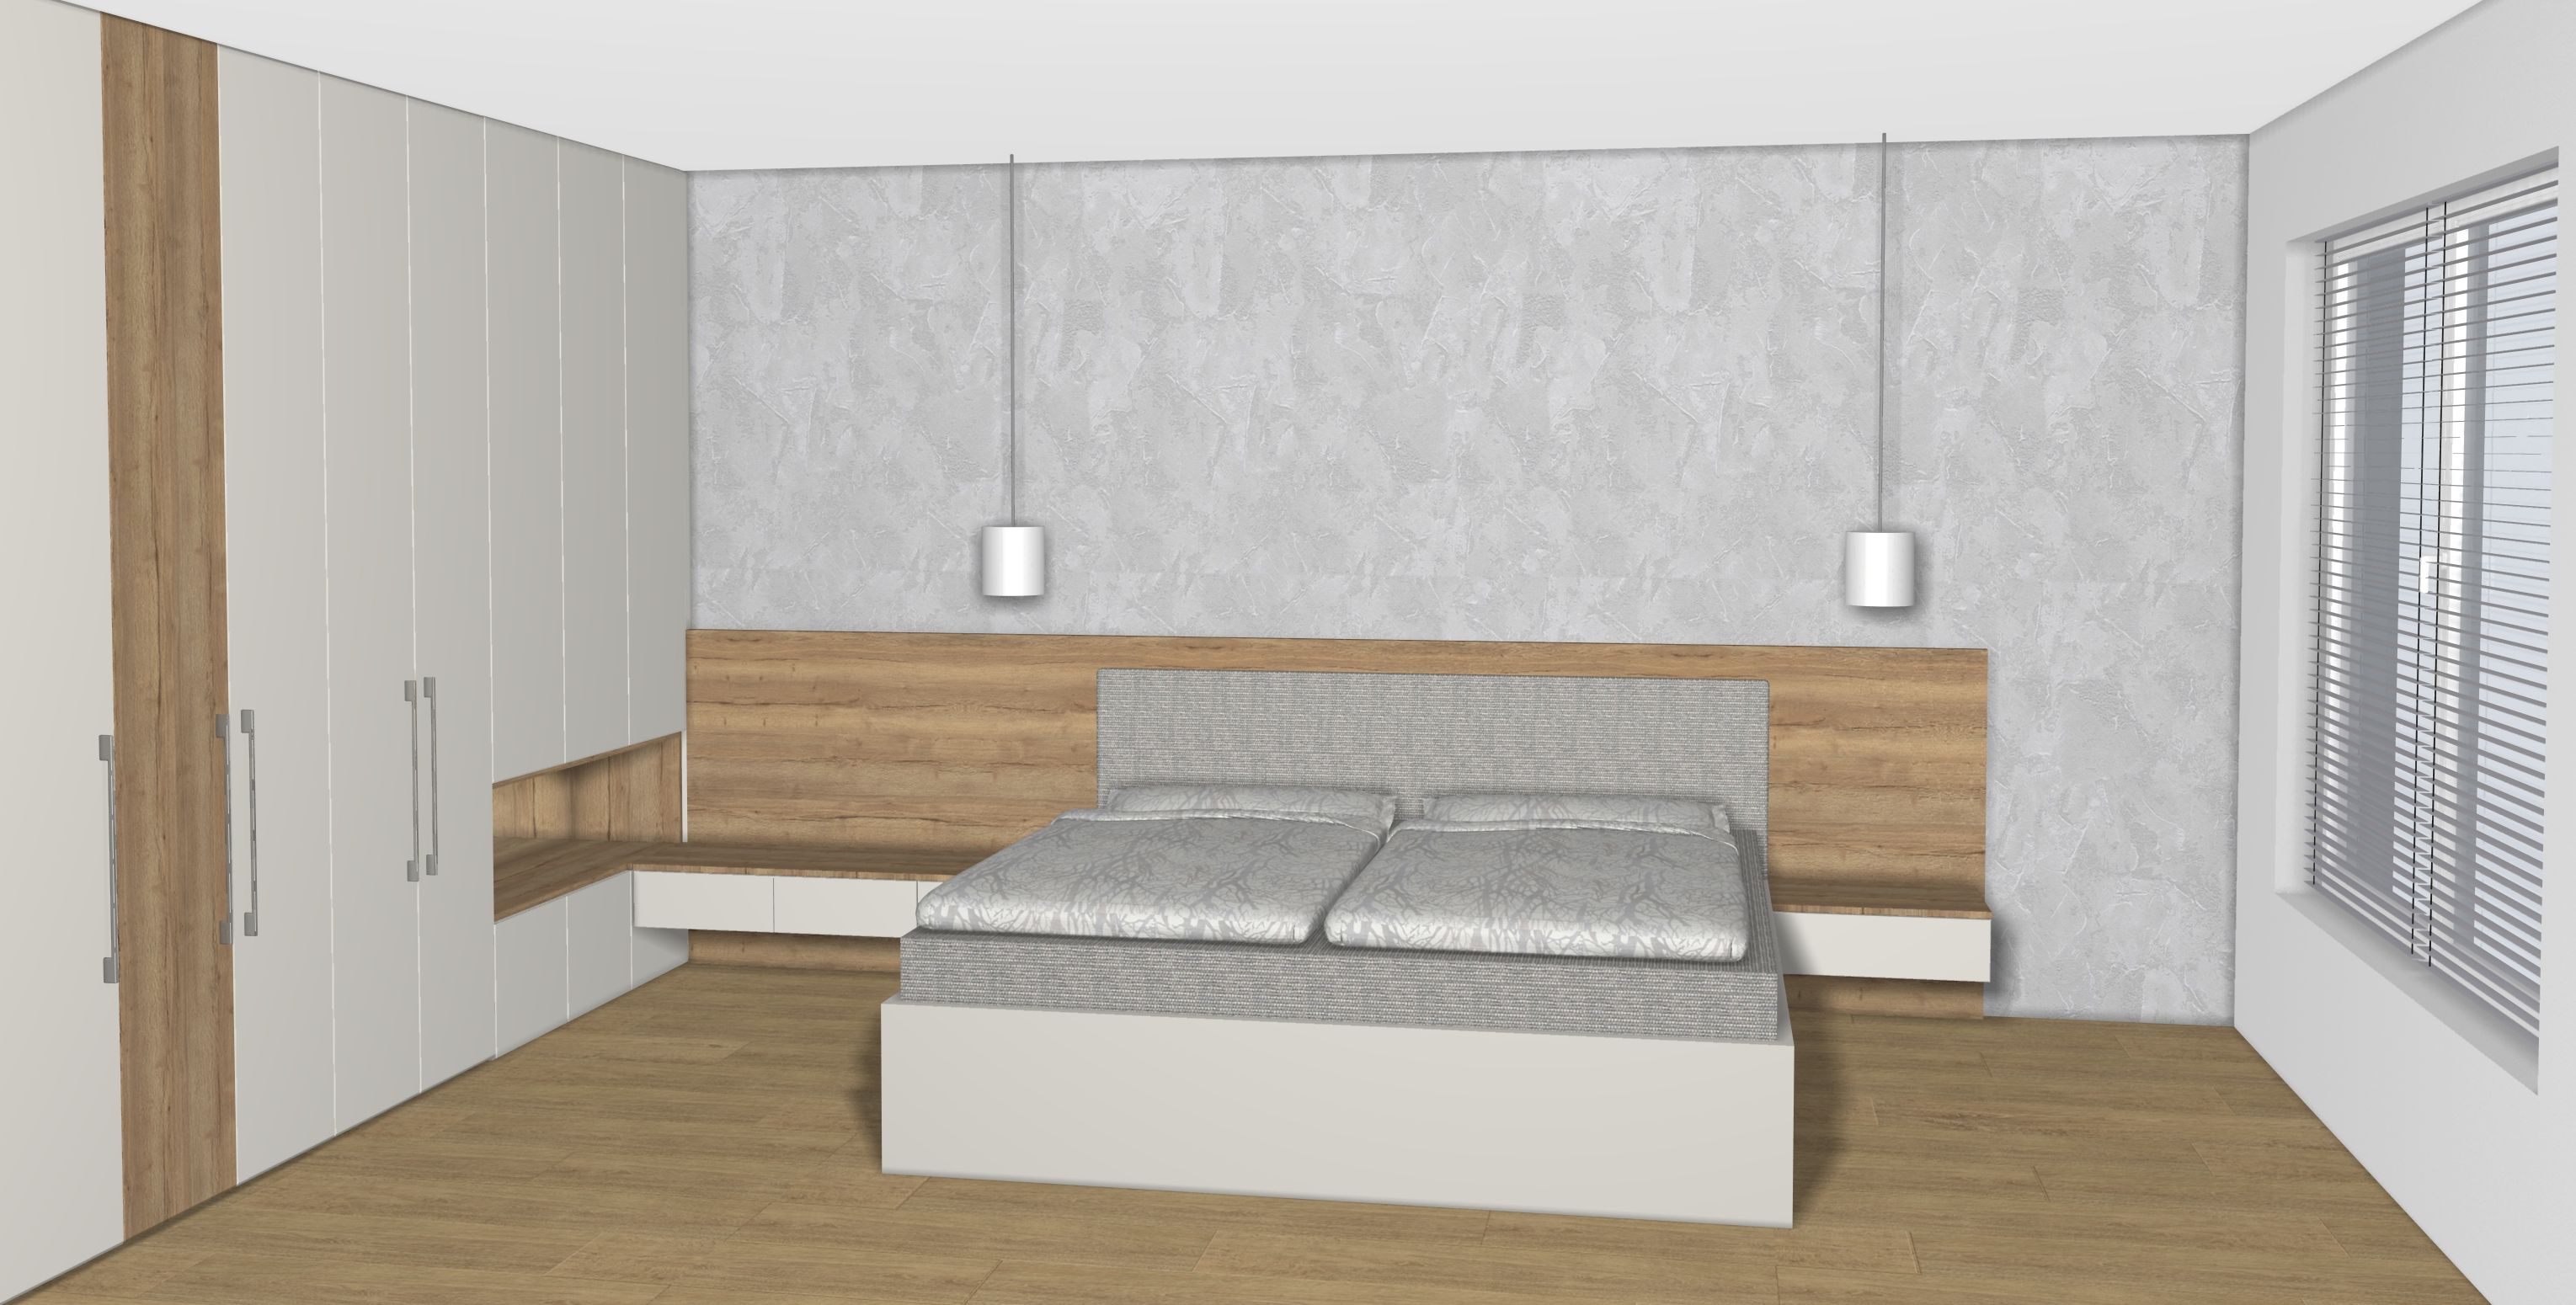 Ložnice s šatnou a toaletním stolkem - pohled na manželskou postel - půdorys